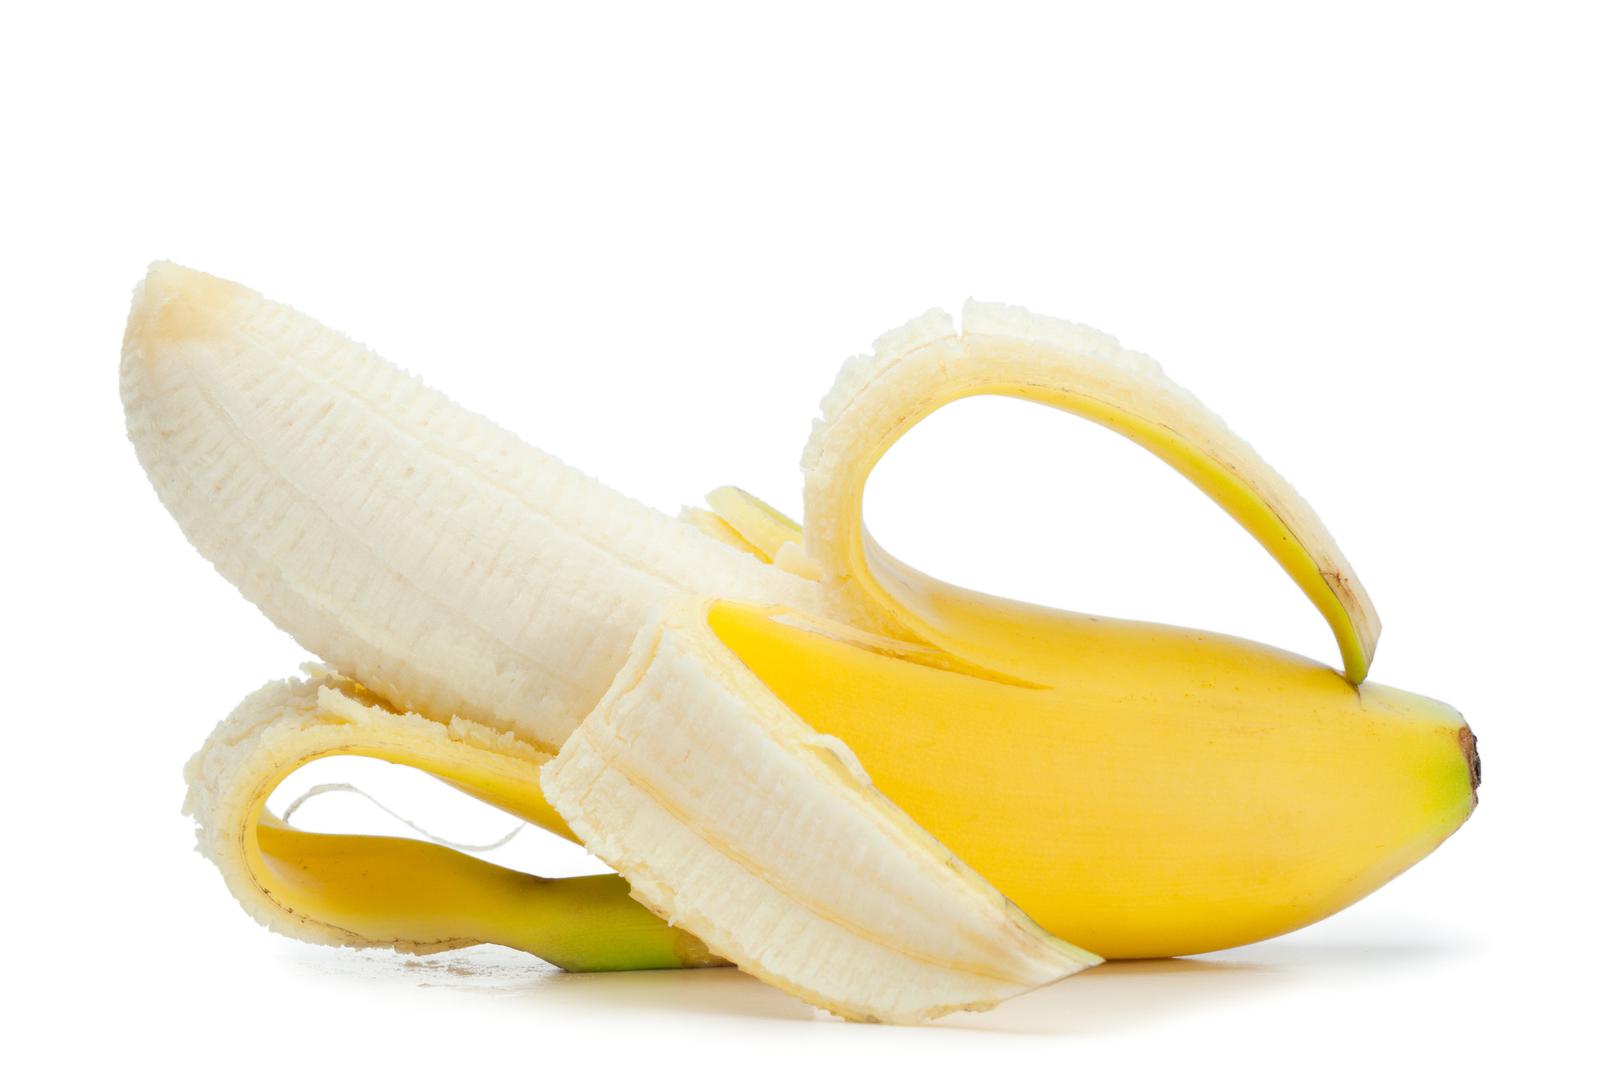 Banane nisu jedino voće koje proizvode etilen. Stoga je važno odvojiti banane od ostalih voćaka koje proizvode taj plin, poput jabuka i avokada. 